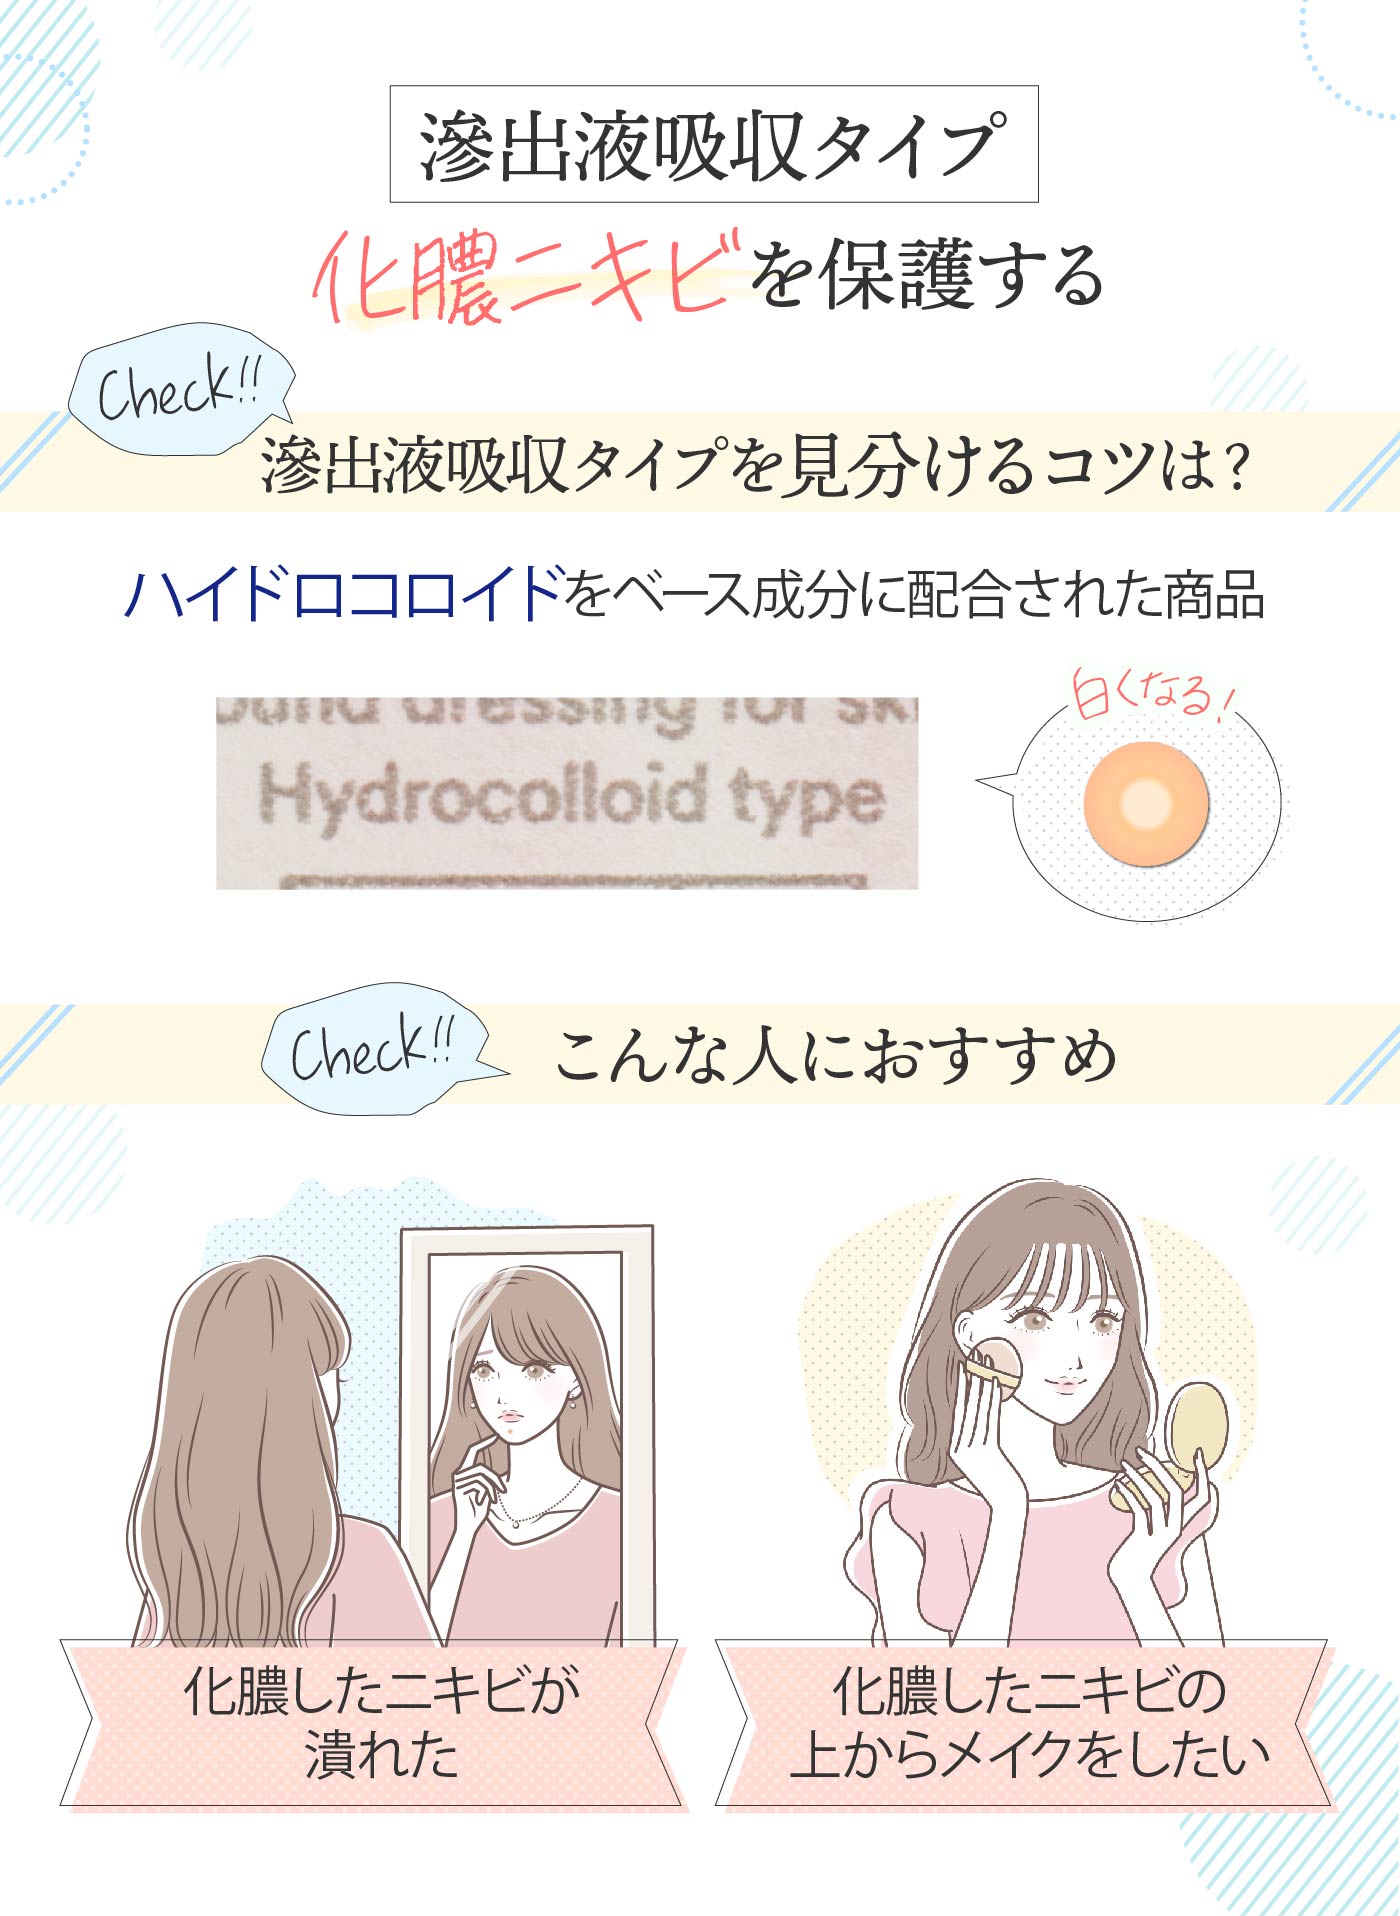 日本正規代理店品 ハイドロコロイド ポイントシール ニキビパッチ にきび できもの 肌荒れ 混合肌